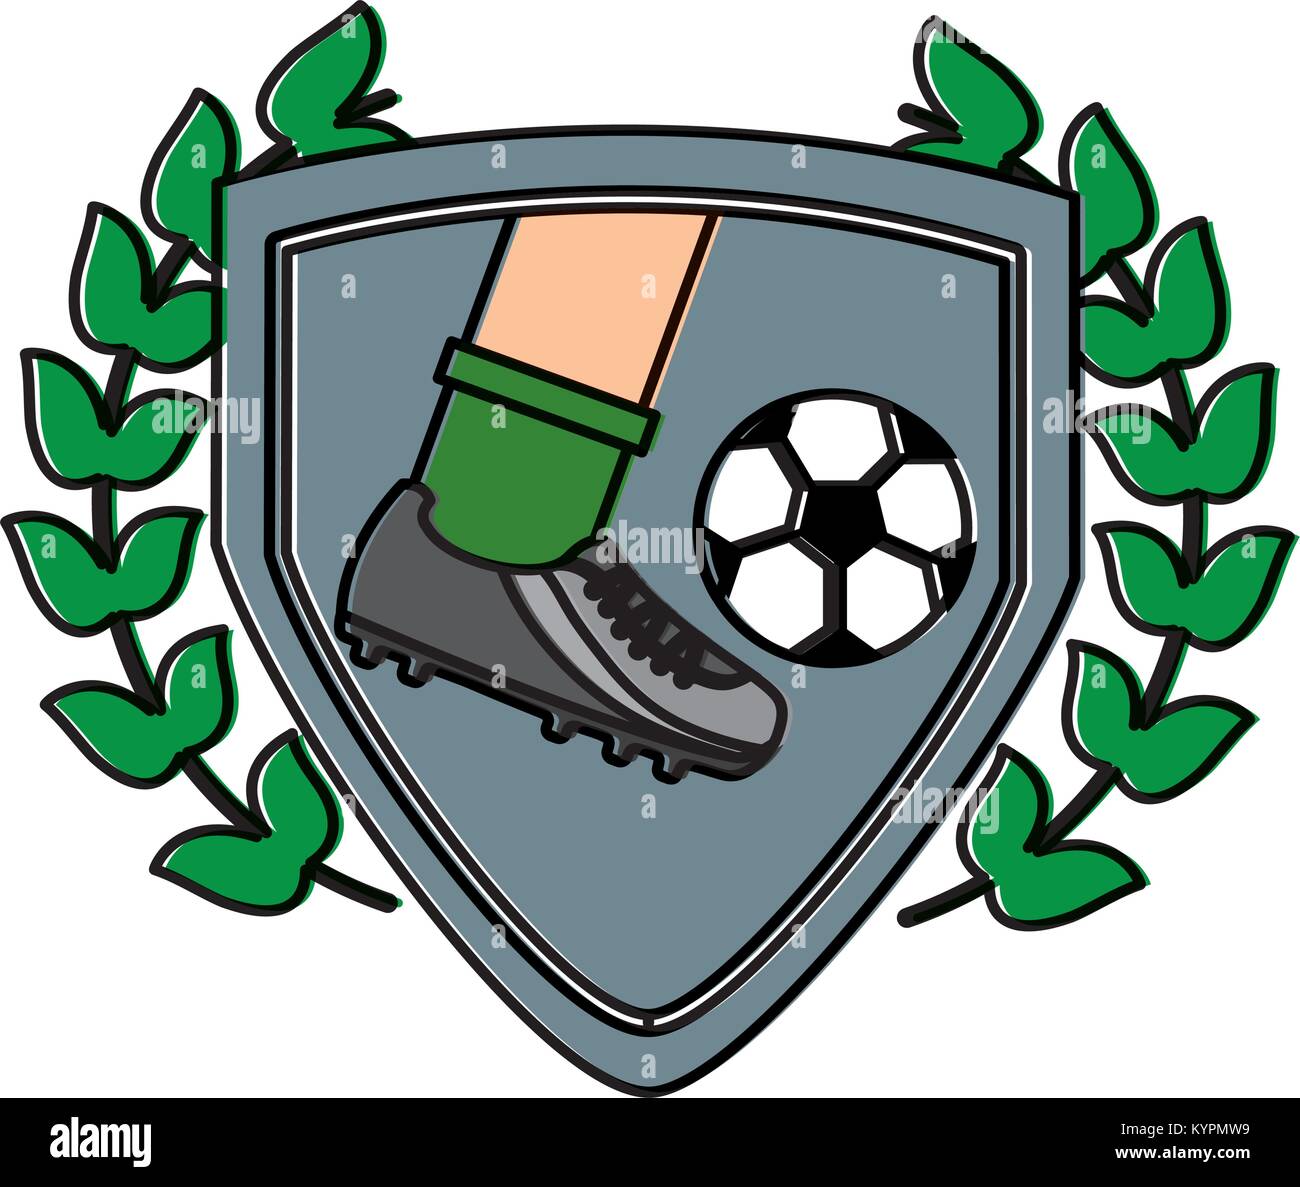 Bein Fuß kicken Fußball inside Schild-emblem Stock-Vektorgrafik - Alamy